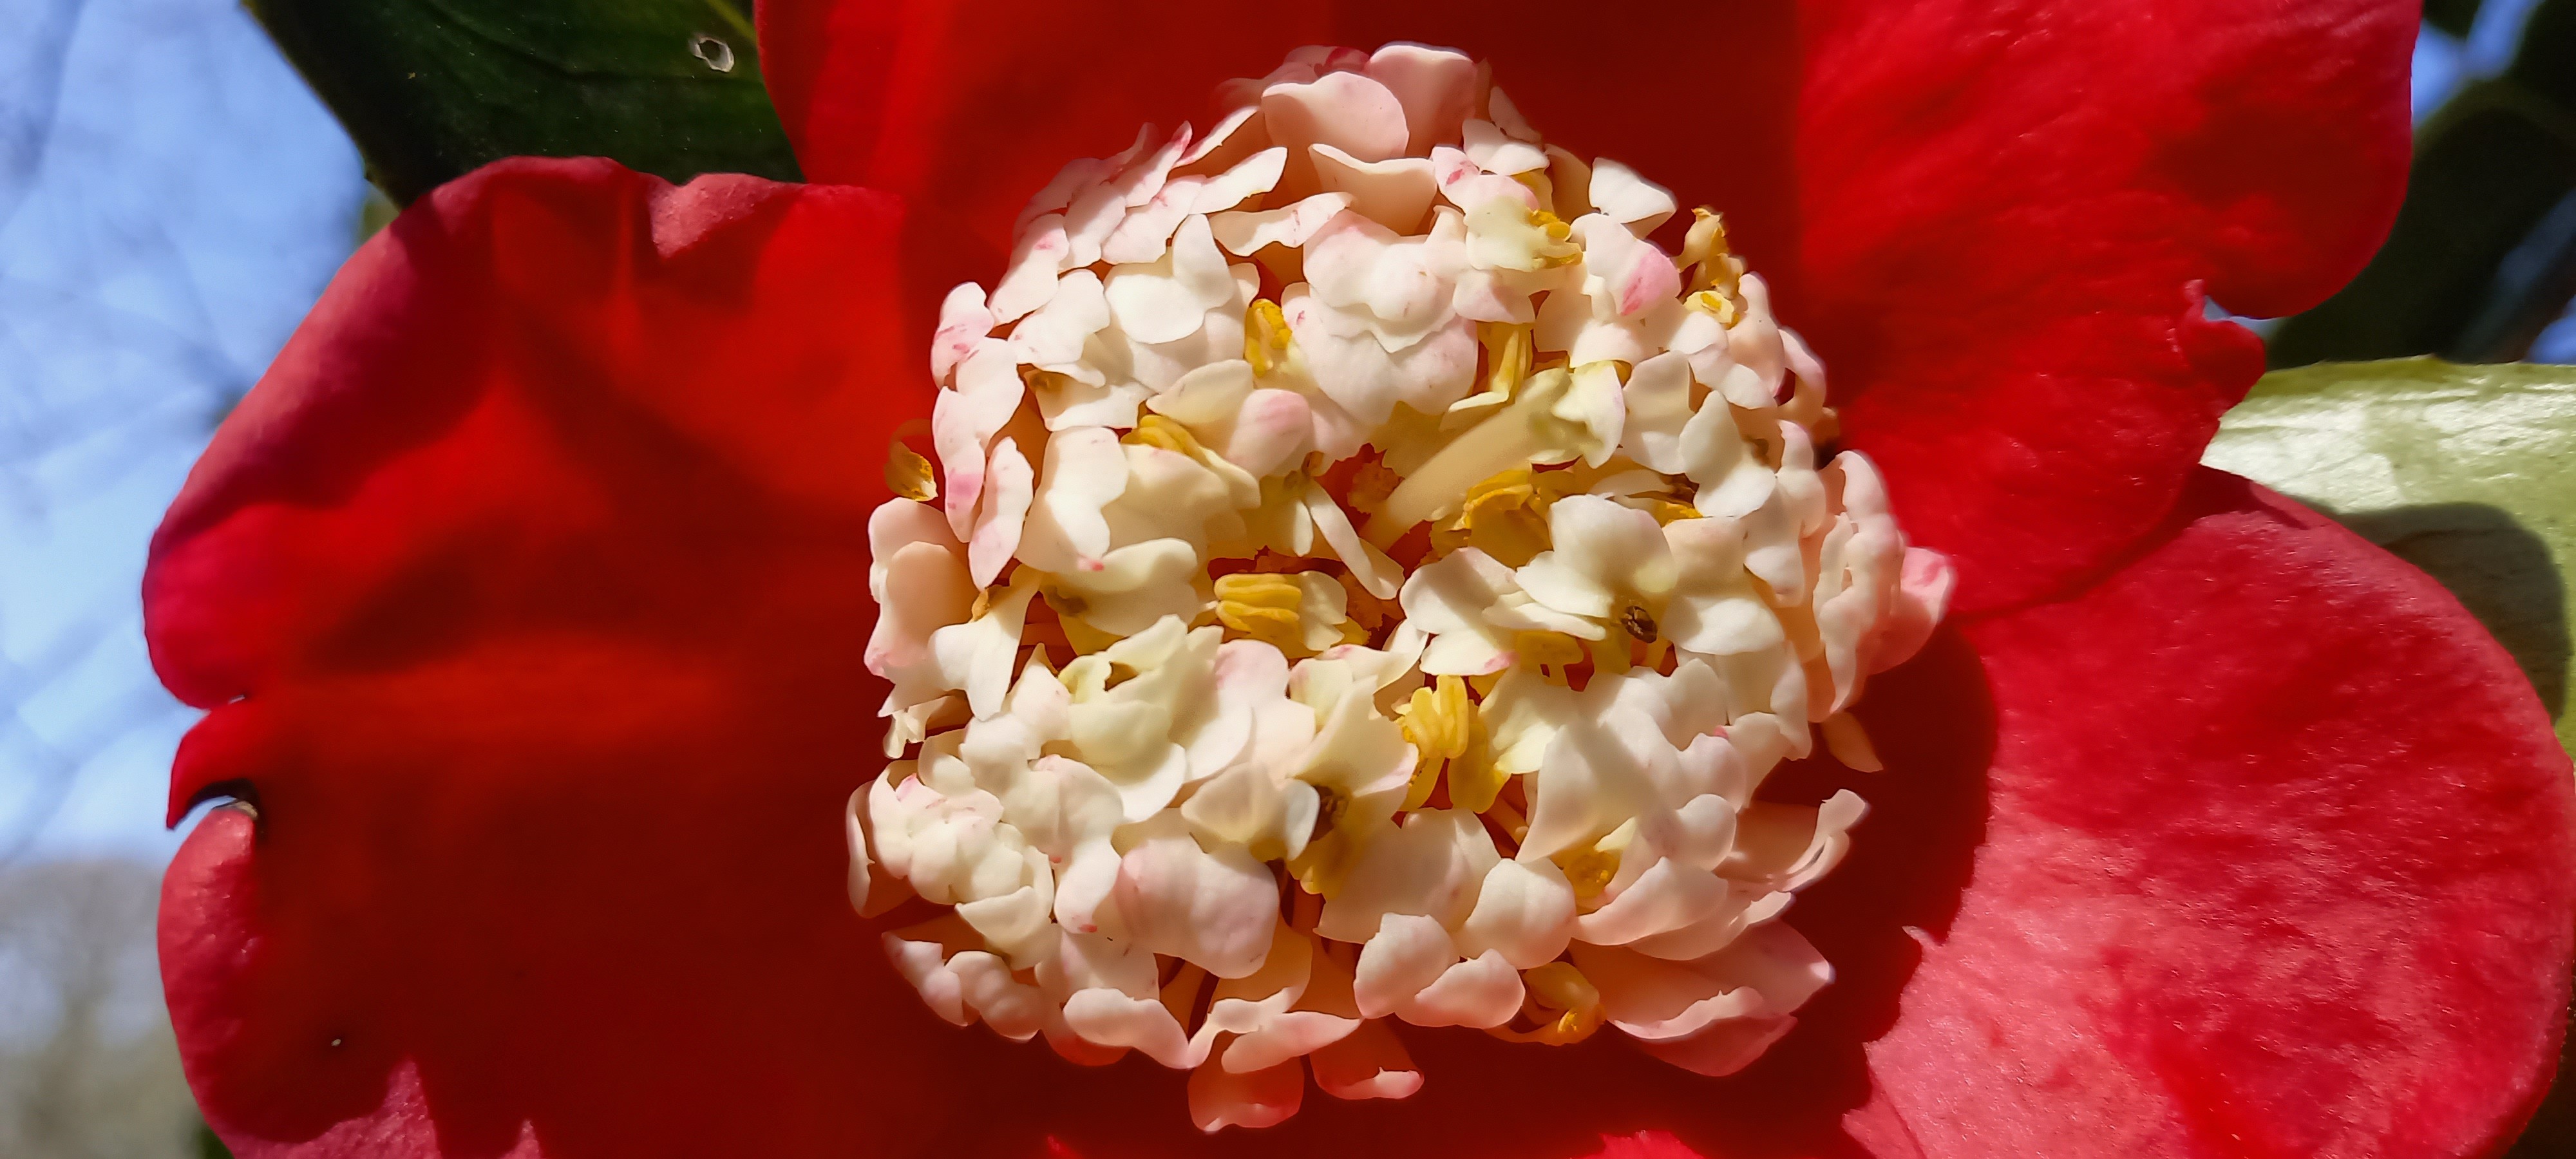 Camellia japonica(Higo) 'Kumagai'